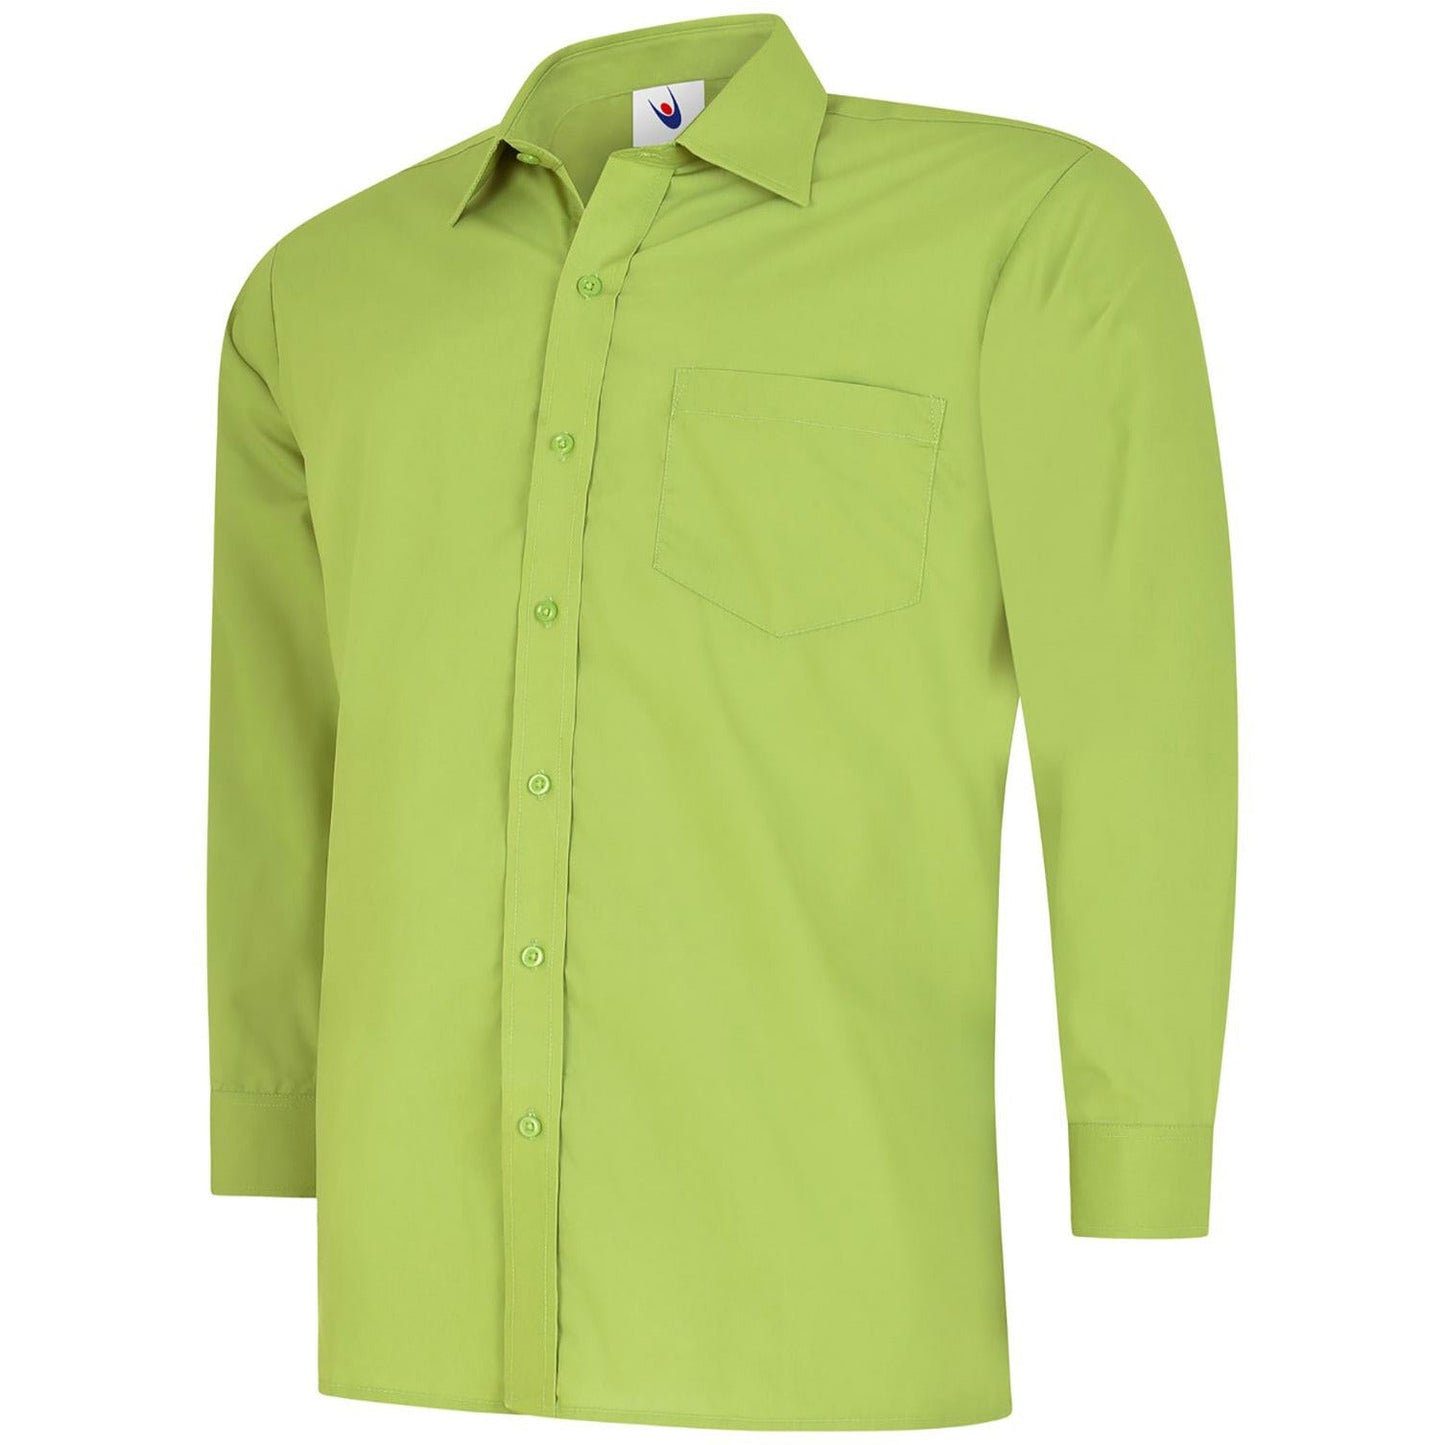 Mens Poplin Full Sleeve Shirt (17 - 19.5) - Lime